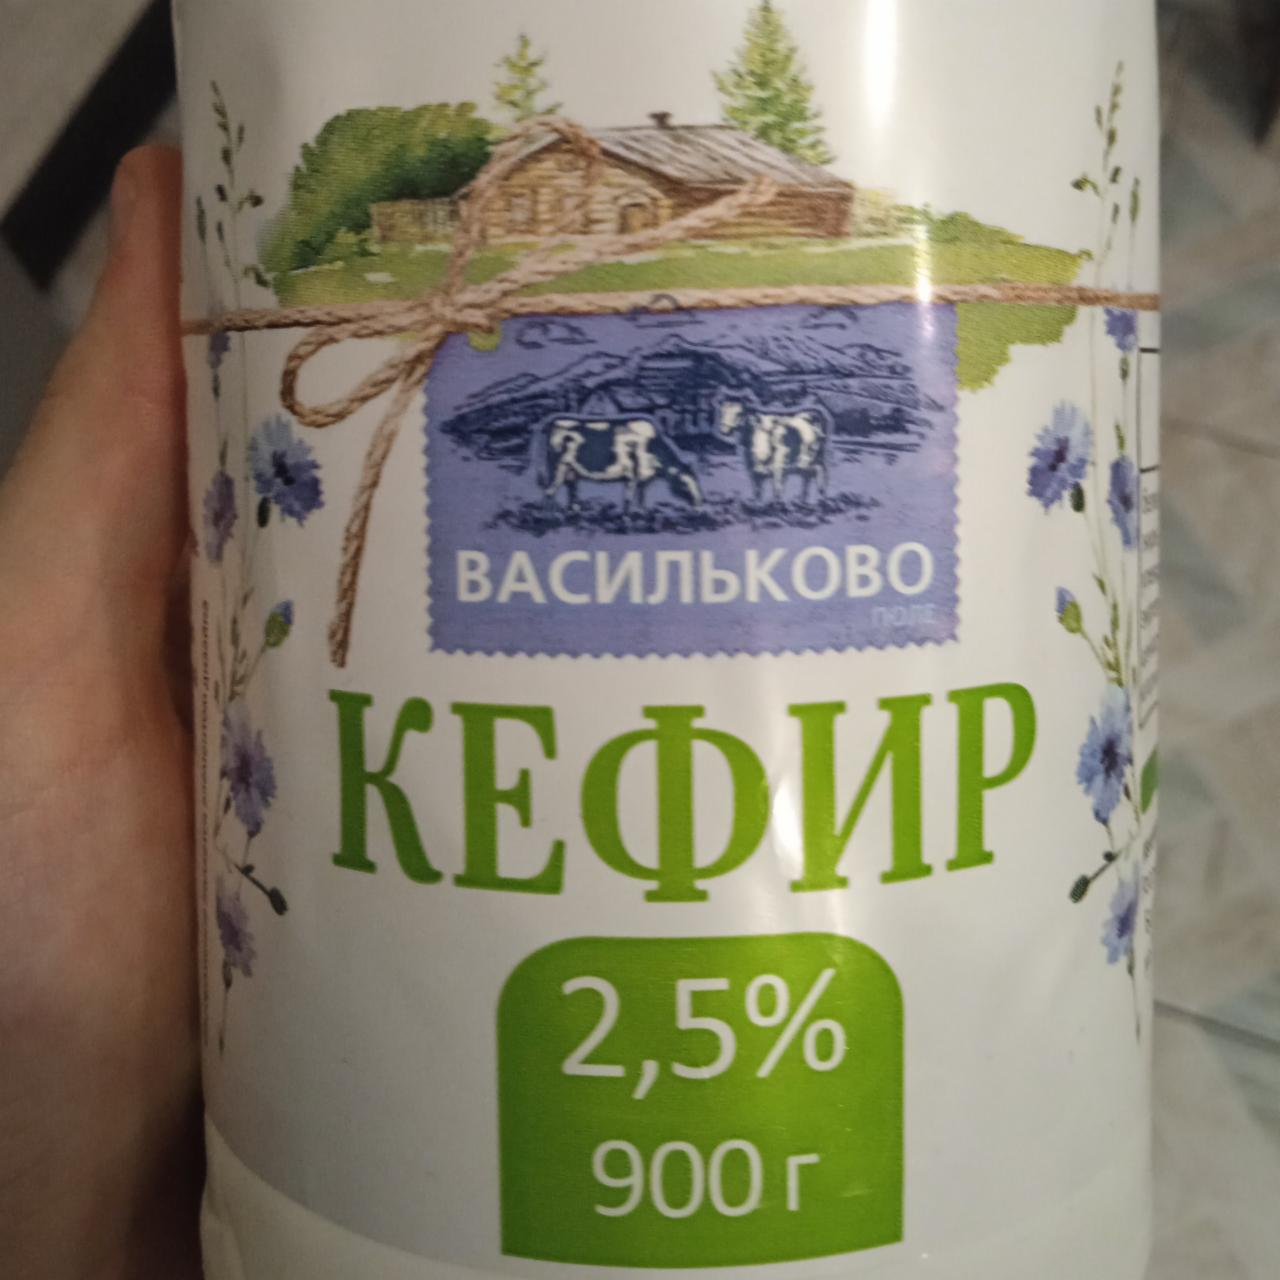 Фото - кефир 2,5% Васильково